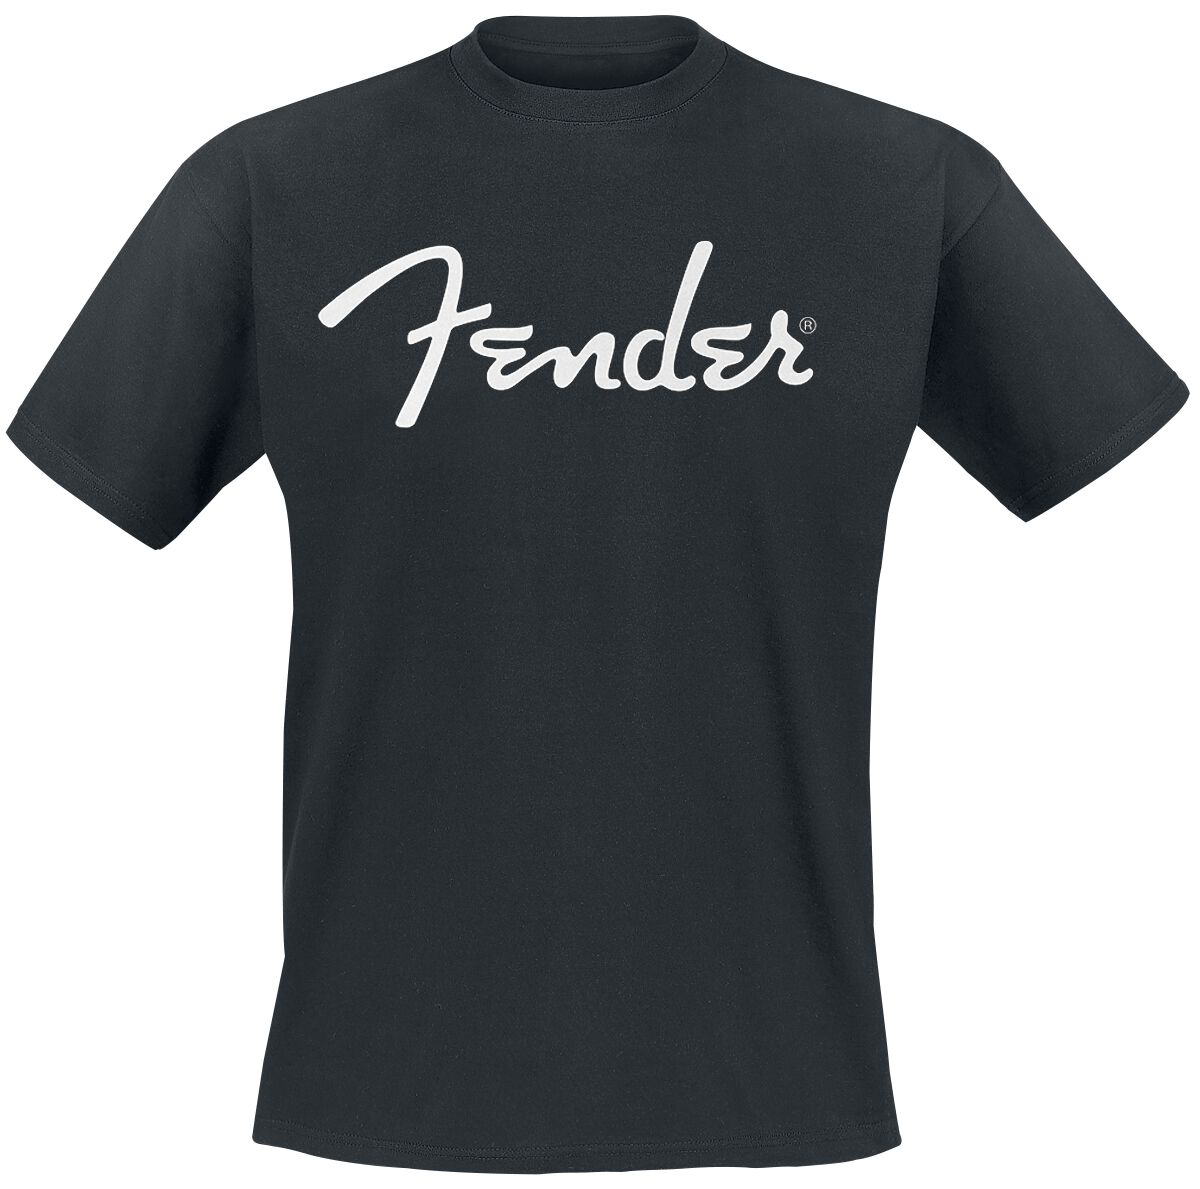 Fender T-Shirt - Classic Logo - S bis XXL - für Männer - Größe XL - schwarz  - Lizenziertes Merchandise!